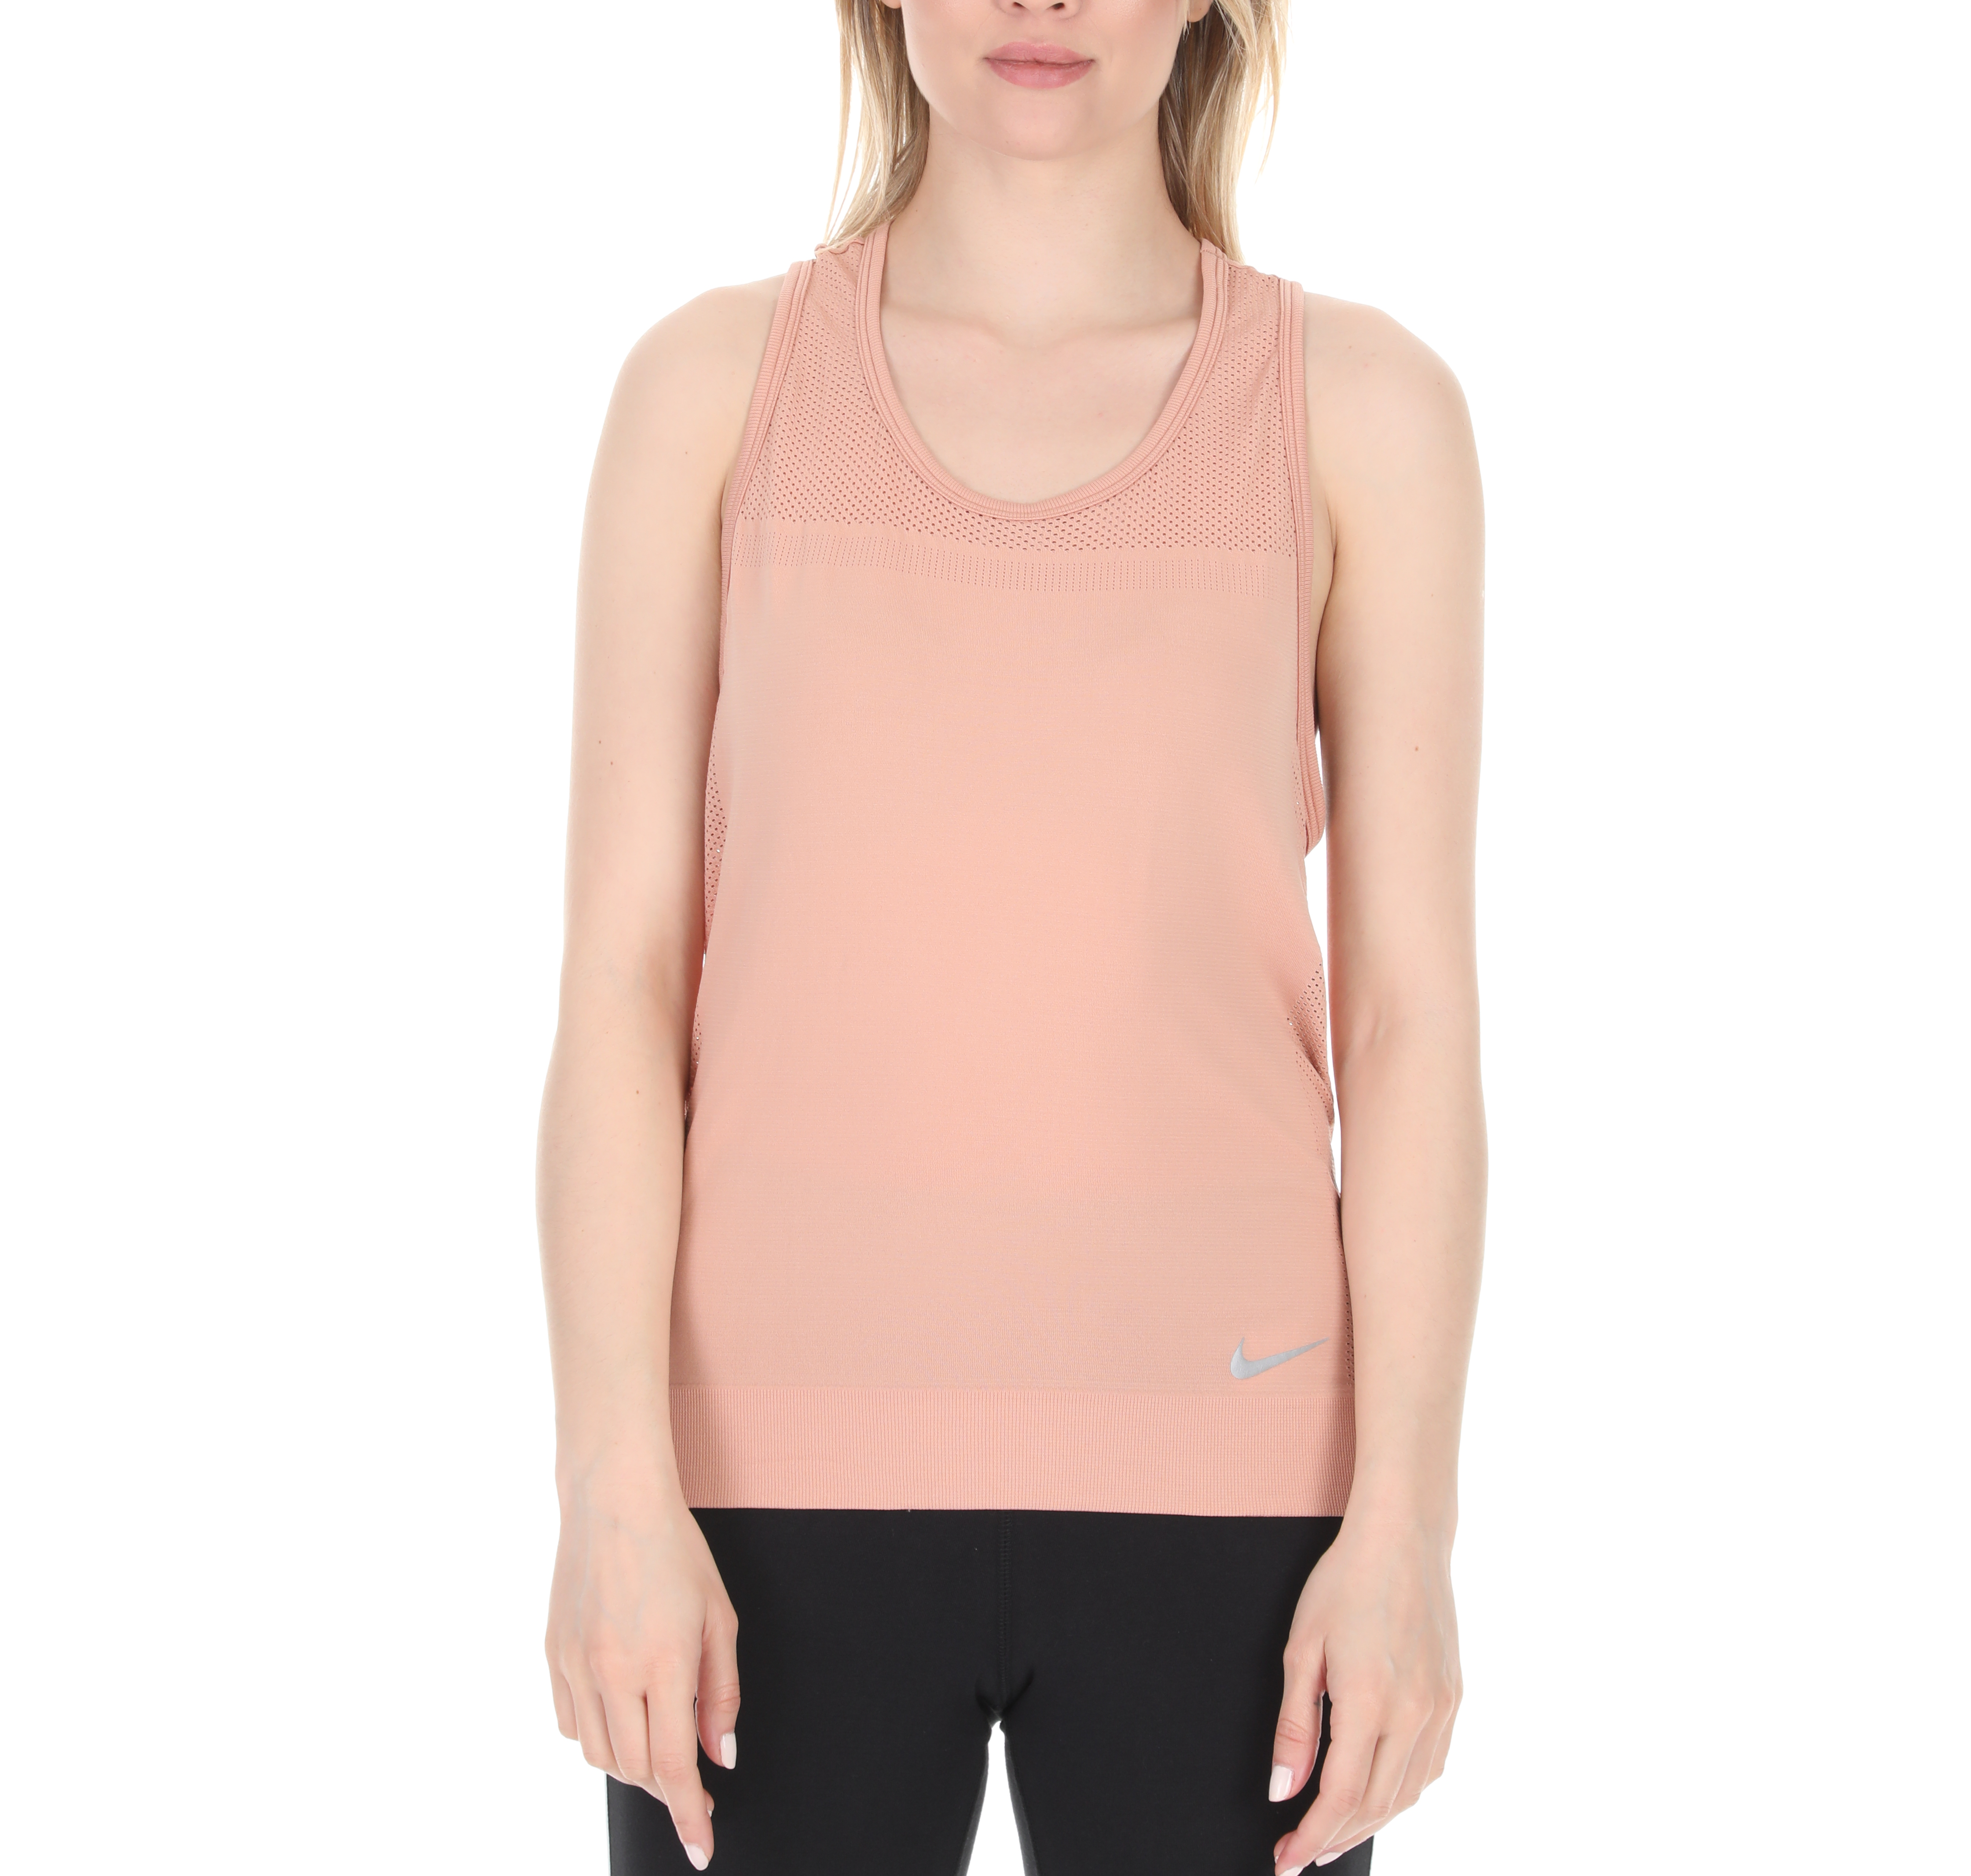 NIKE - Γυναικείο φανελάκι NIKE INFINITE ροζ Γυναικεία/Ρούχα/Αθλητικά/T-shirt-Τοπ